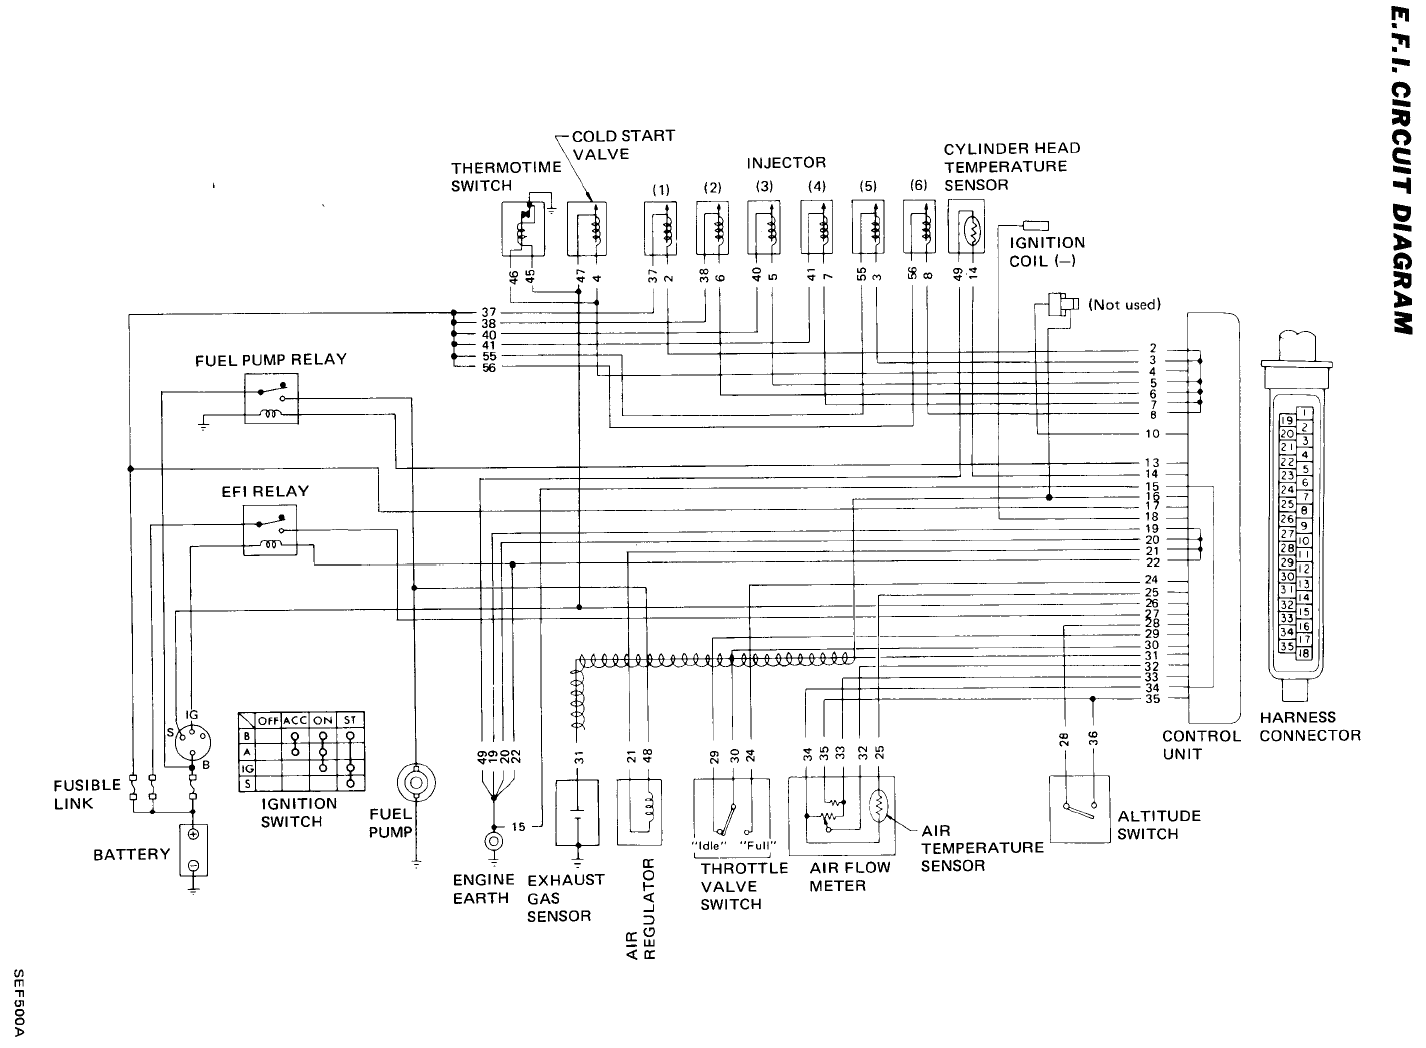 83 Nissan stanza wiring diagram